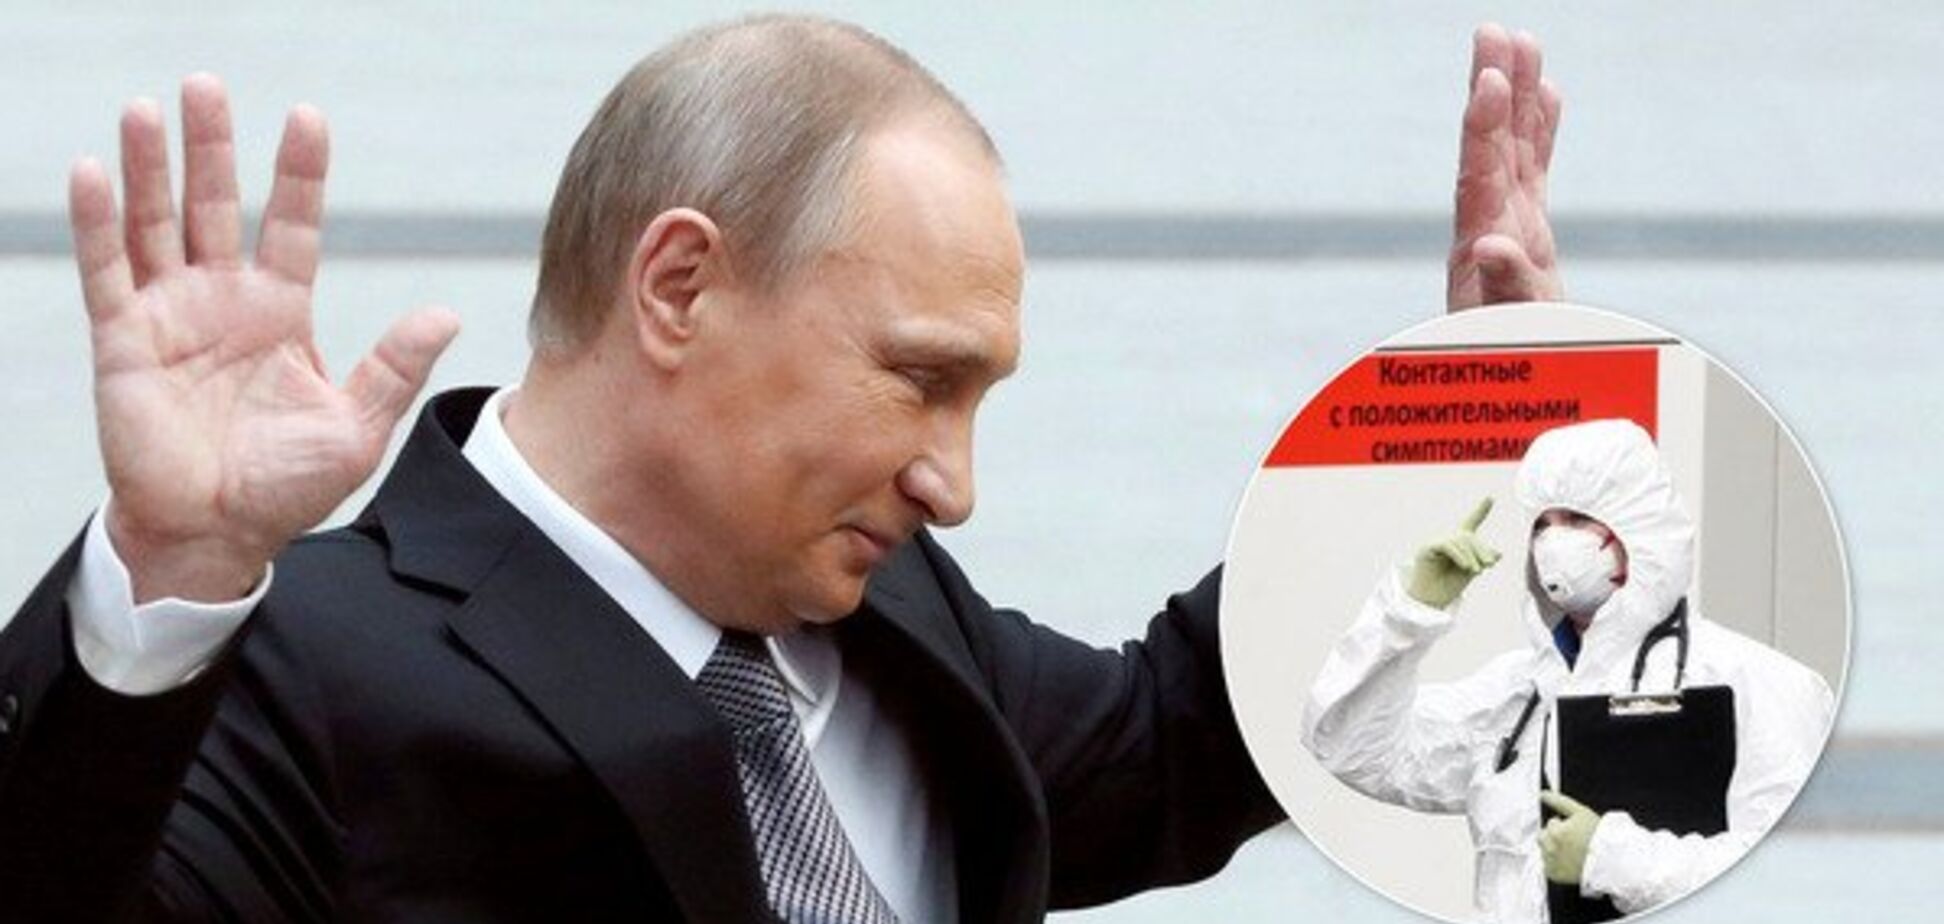 Путин защищен от коронавируса, его могли накачать – российские политологи